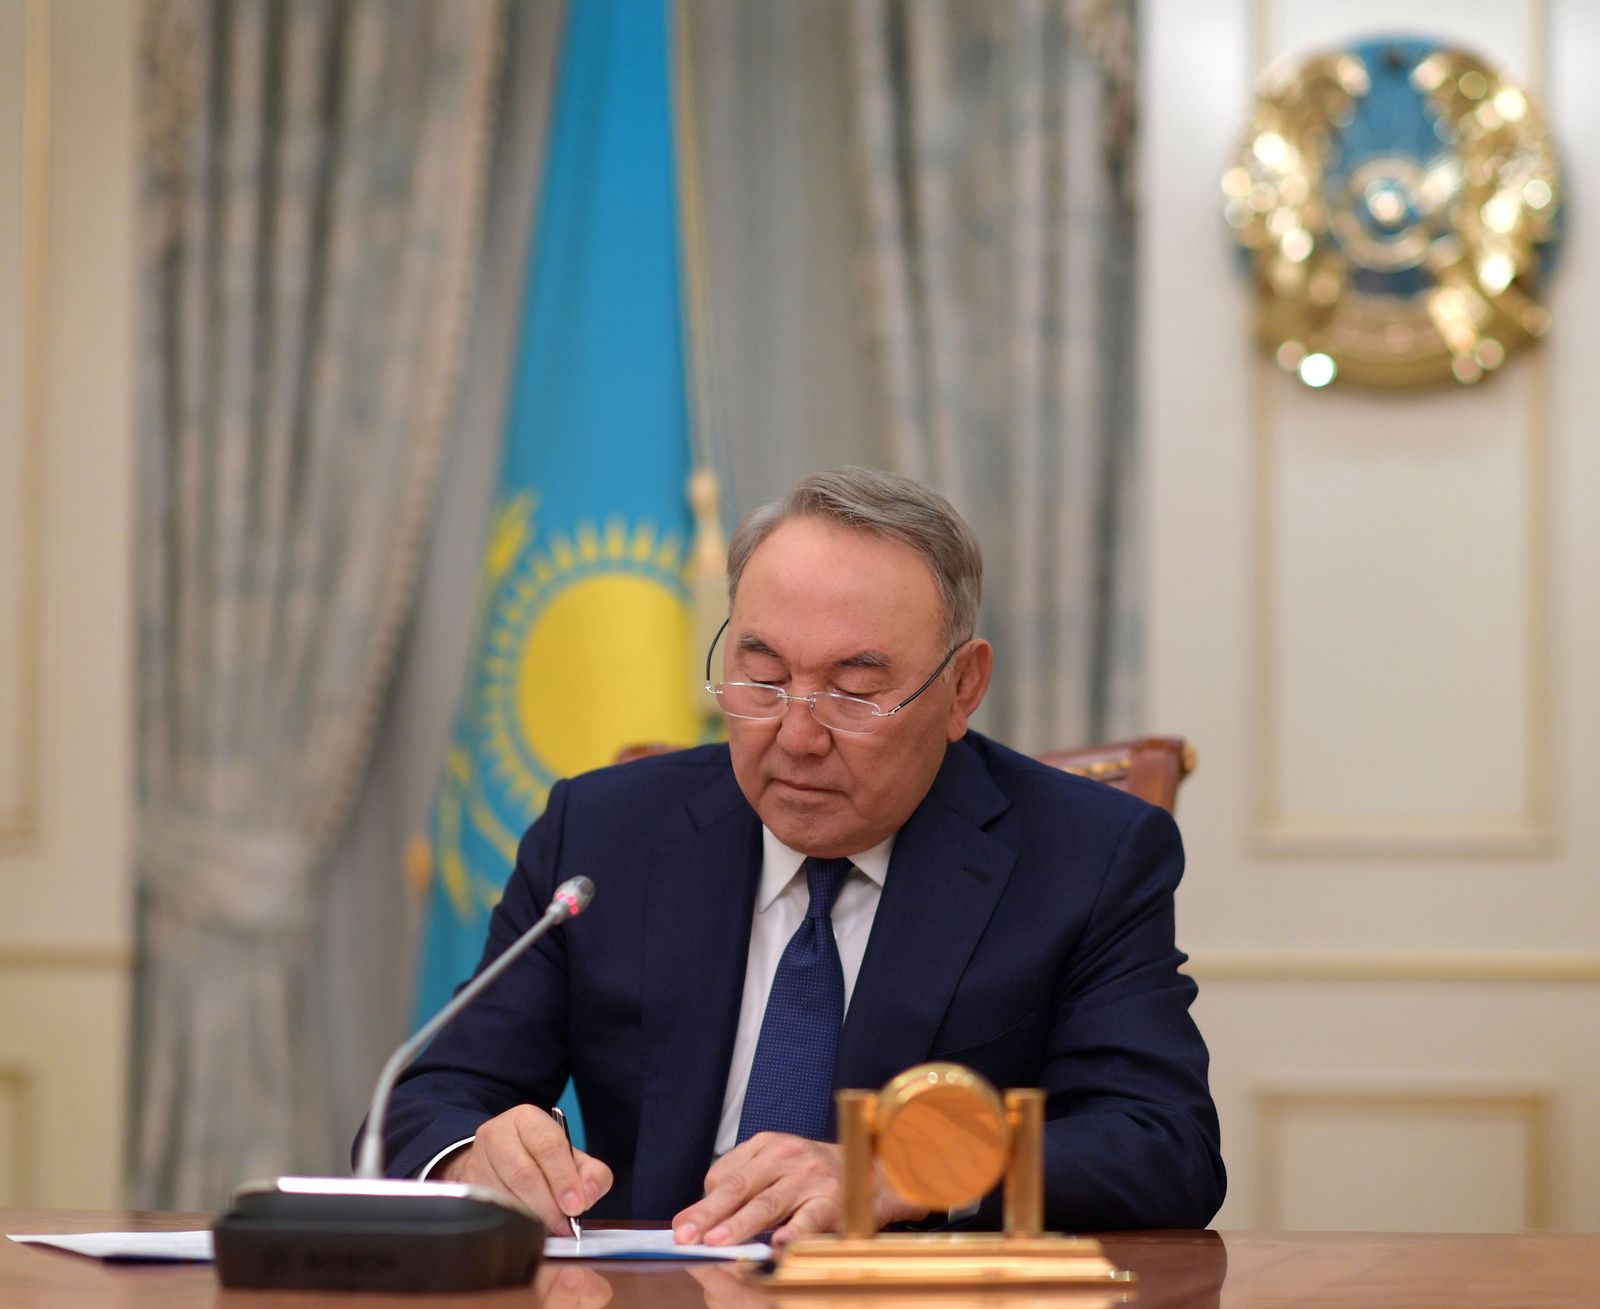 رئيس كازاخستان السابق نور سلطان نزارباييف يلقي خطاب تلفزياً يعلن فيه الاستقالة من منصبه. 19 مارس 2019. - REUTERS